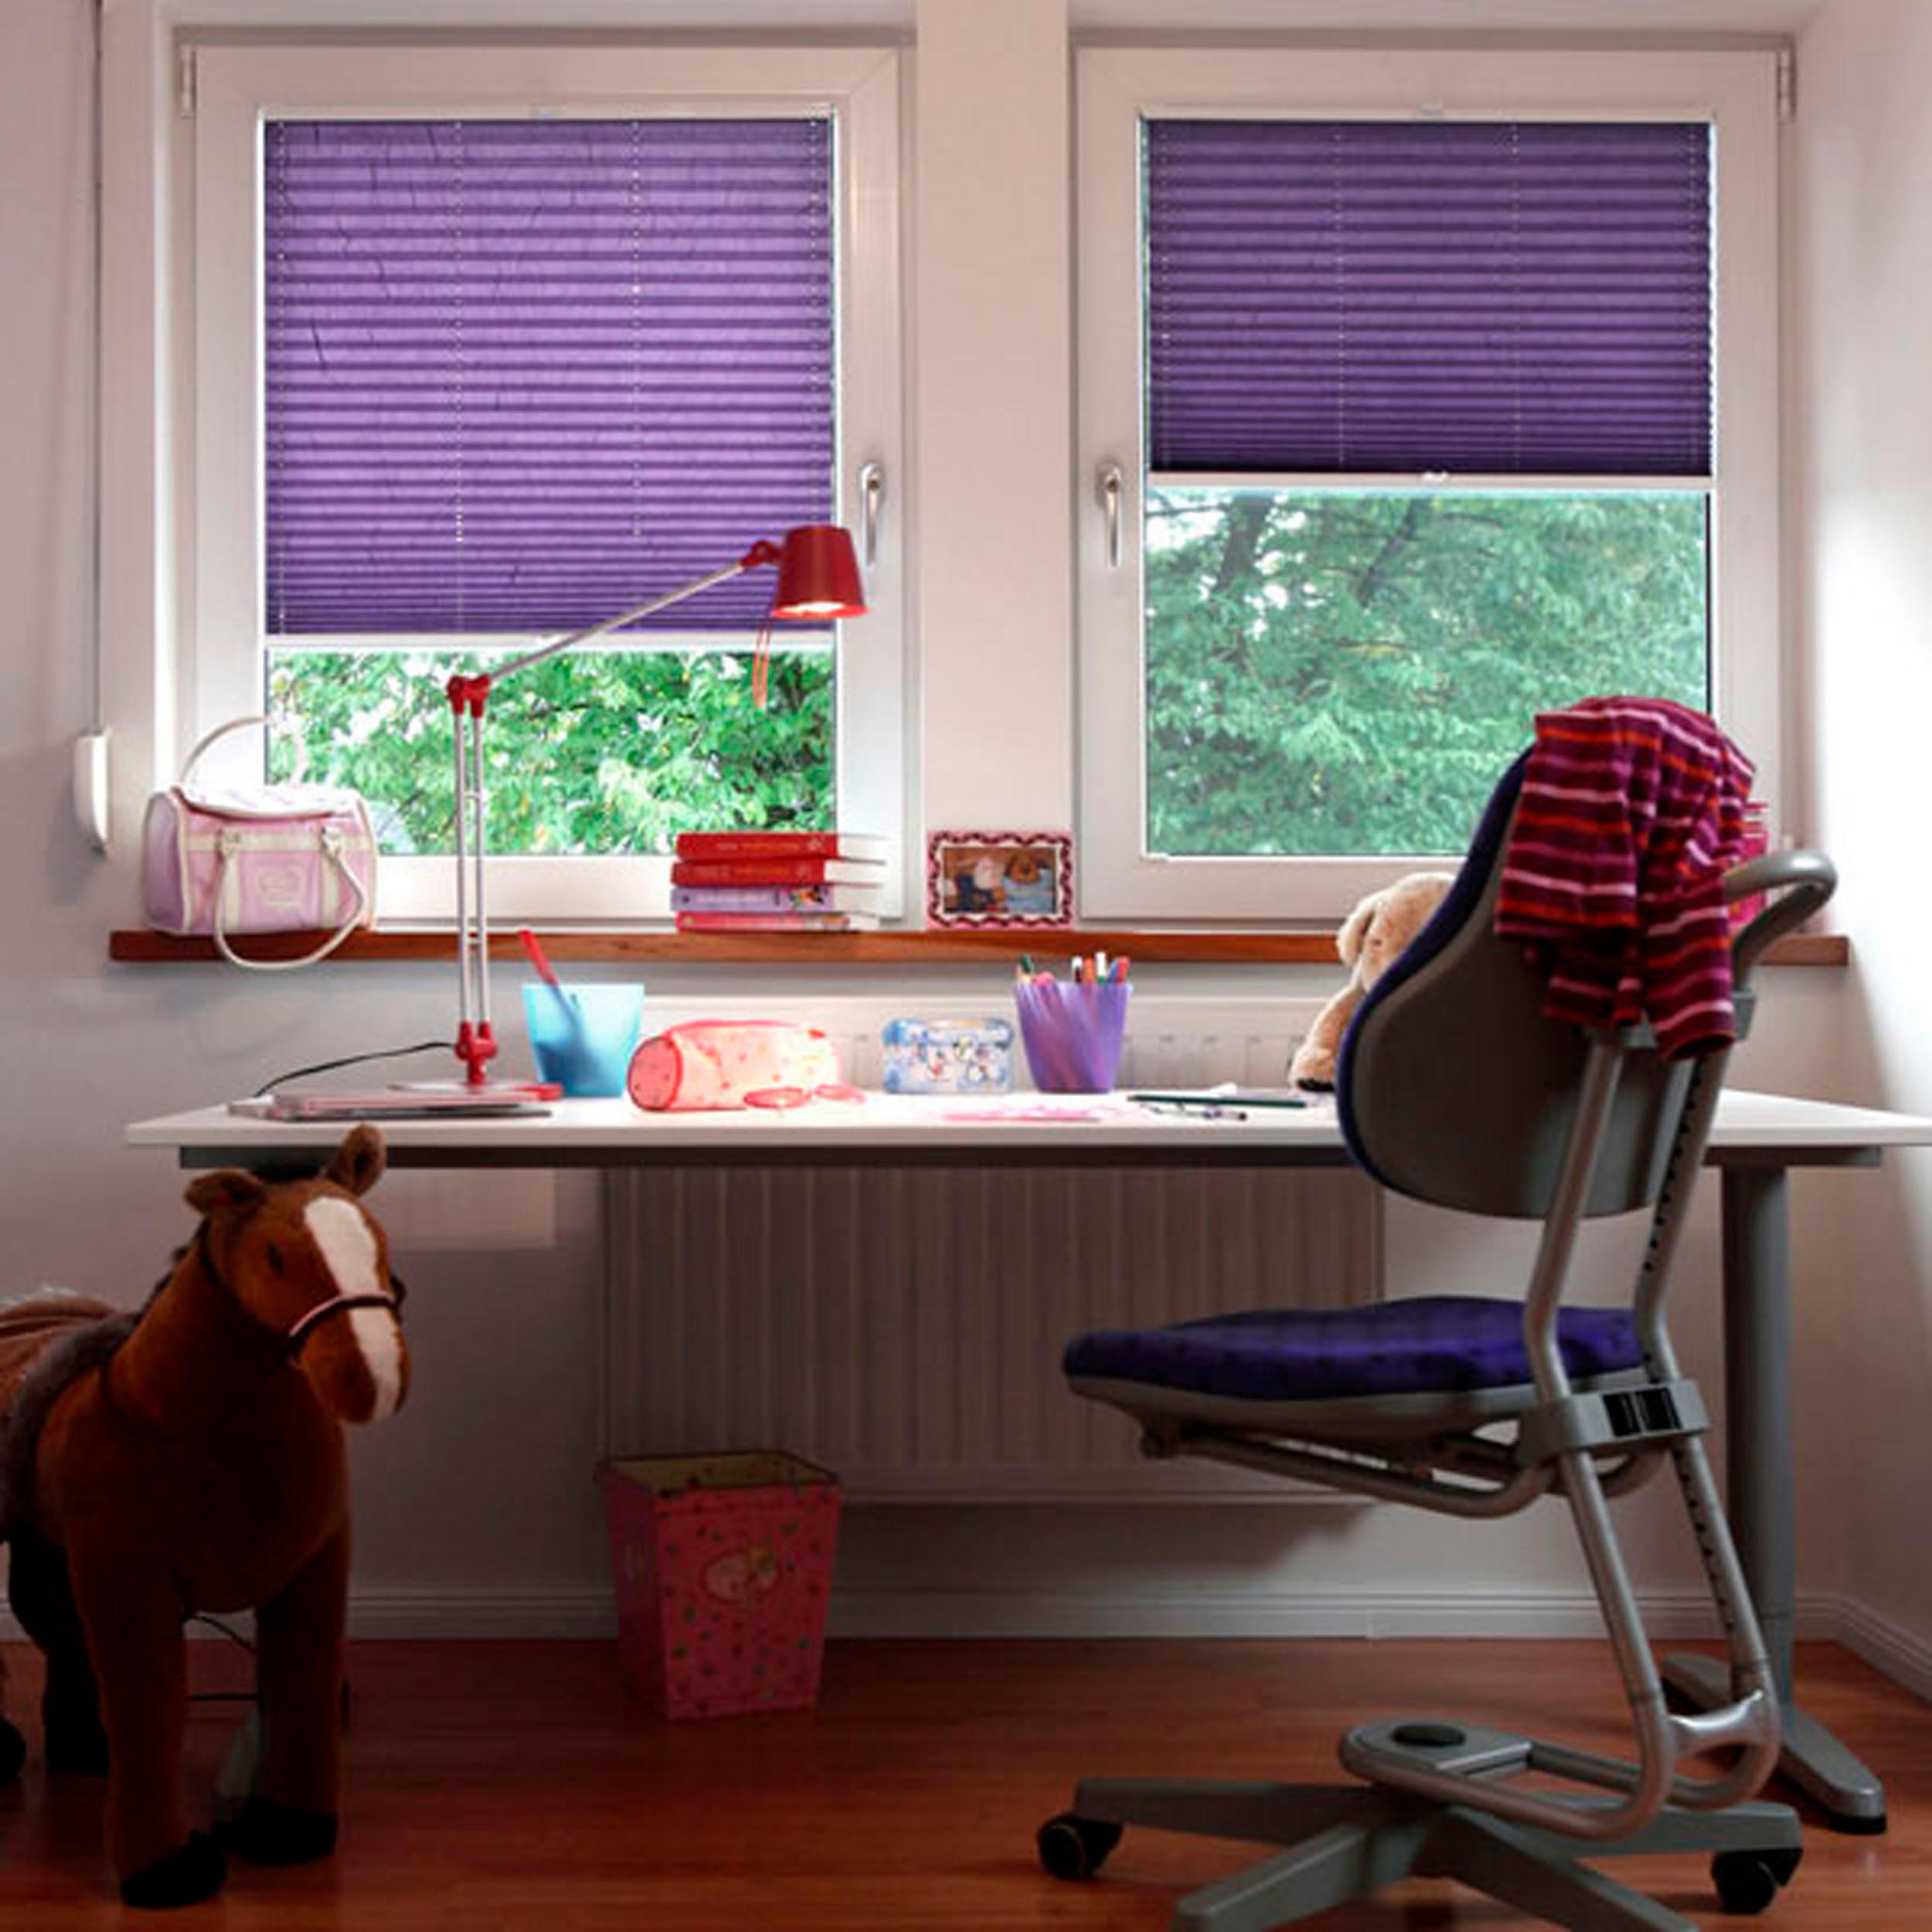 Farbenfrohe Fensterdekoration im Kinderzimmer #rollo #plissee ©cosiflor